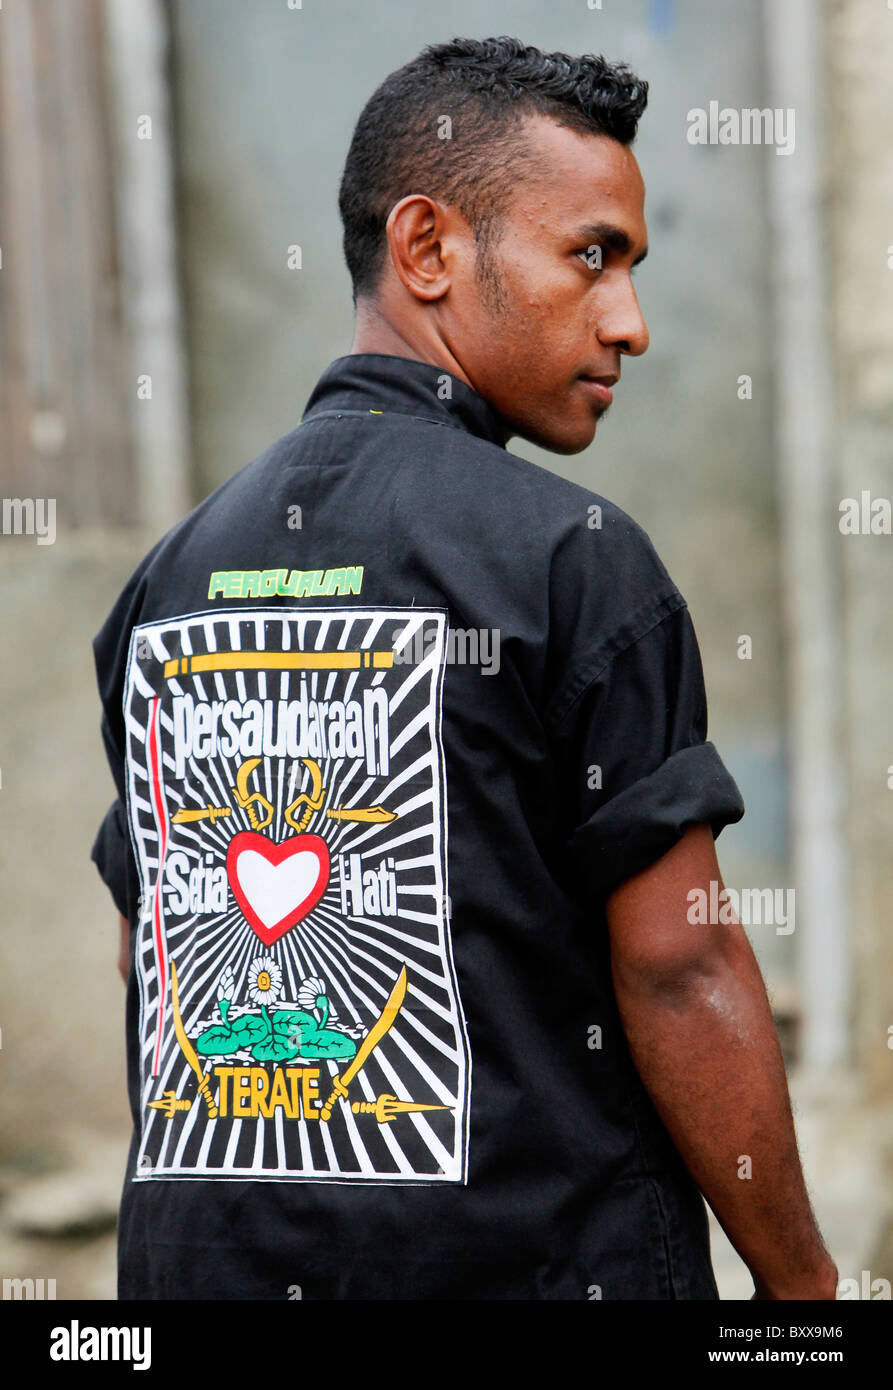 Emblema de la tristemente célebre grupo de artes marciales y pandillas juveniles PSHT, Dili, Timor Leste (Timor Oriental) Foto de stock